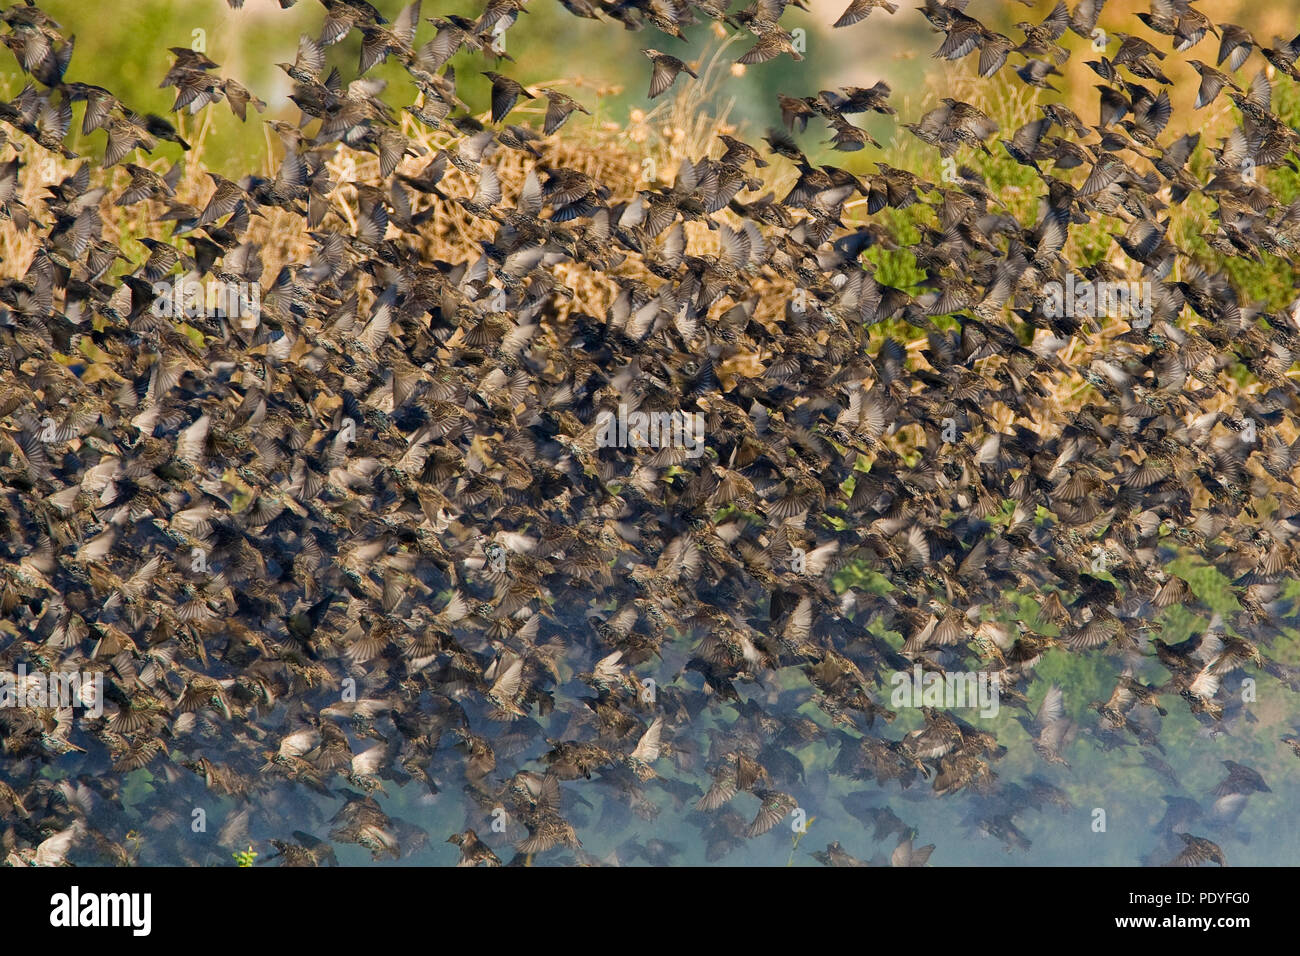 Große fliegende Herde von gemeinsamen Stare Sturnus vulgaris;; Grote Groep vliegende Spreeuwen. Stockfoto